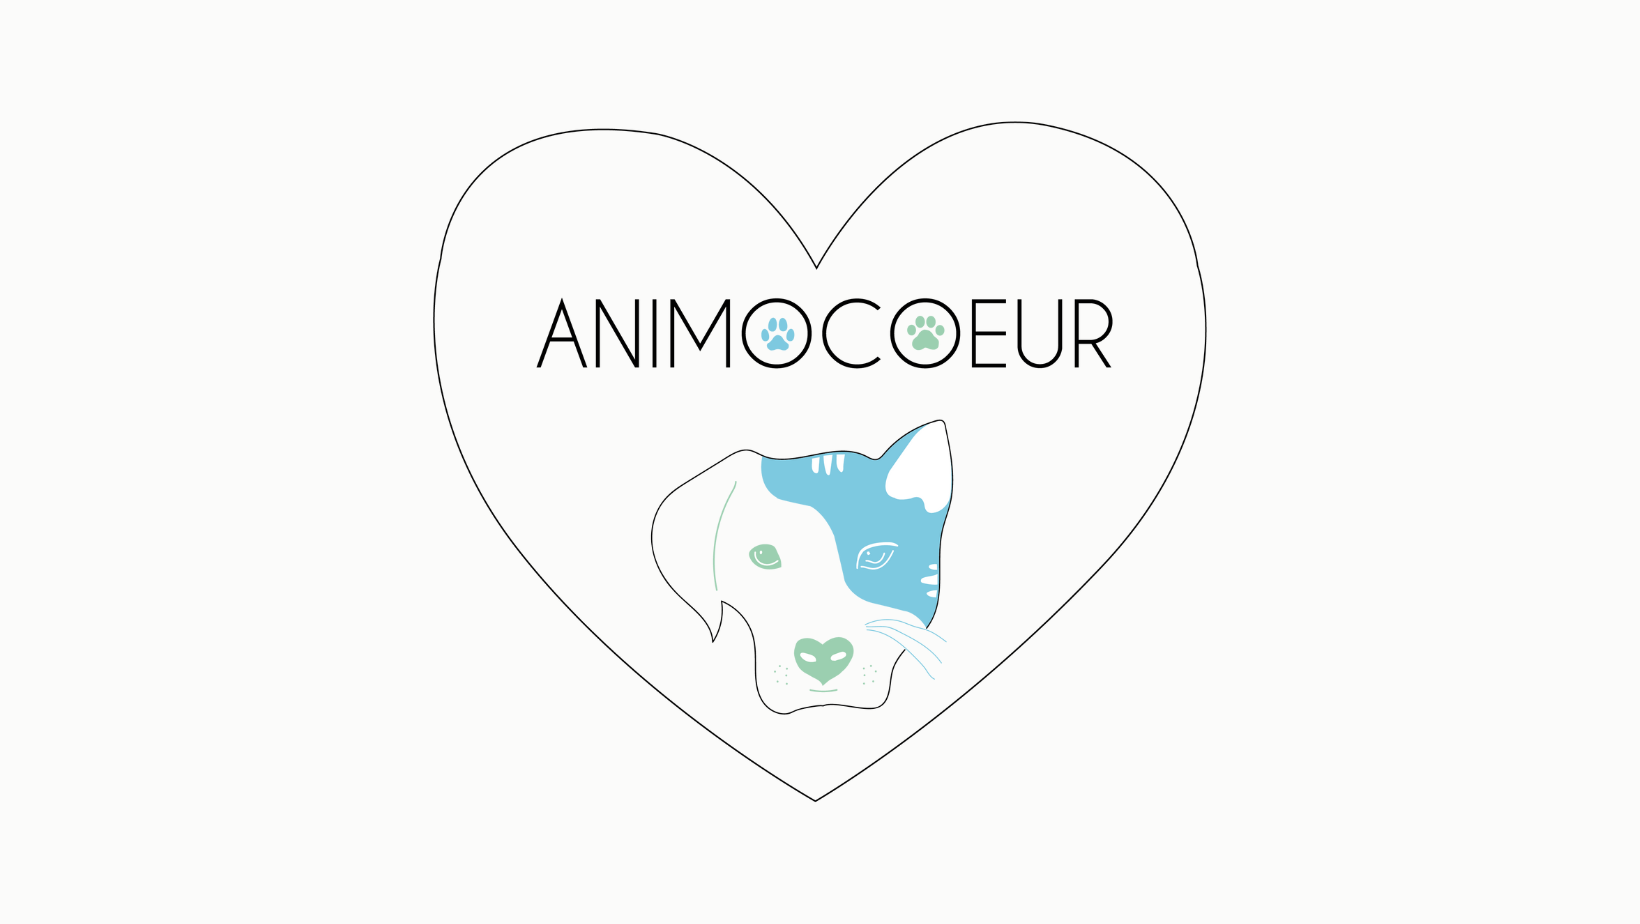 Animocoeur